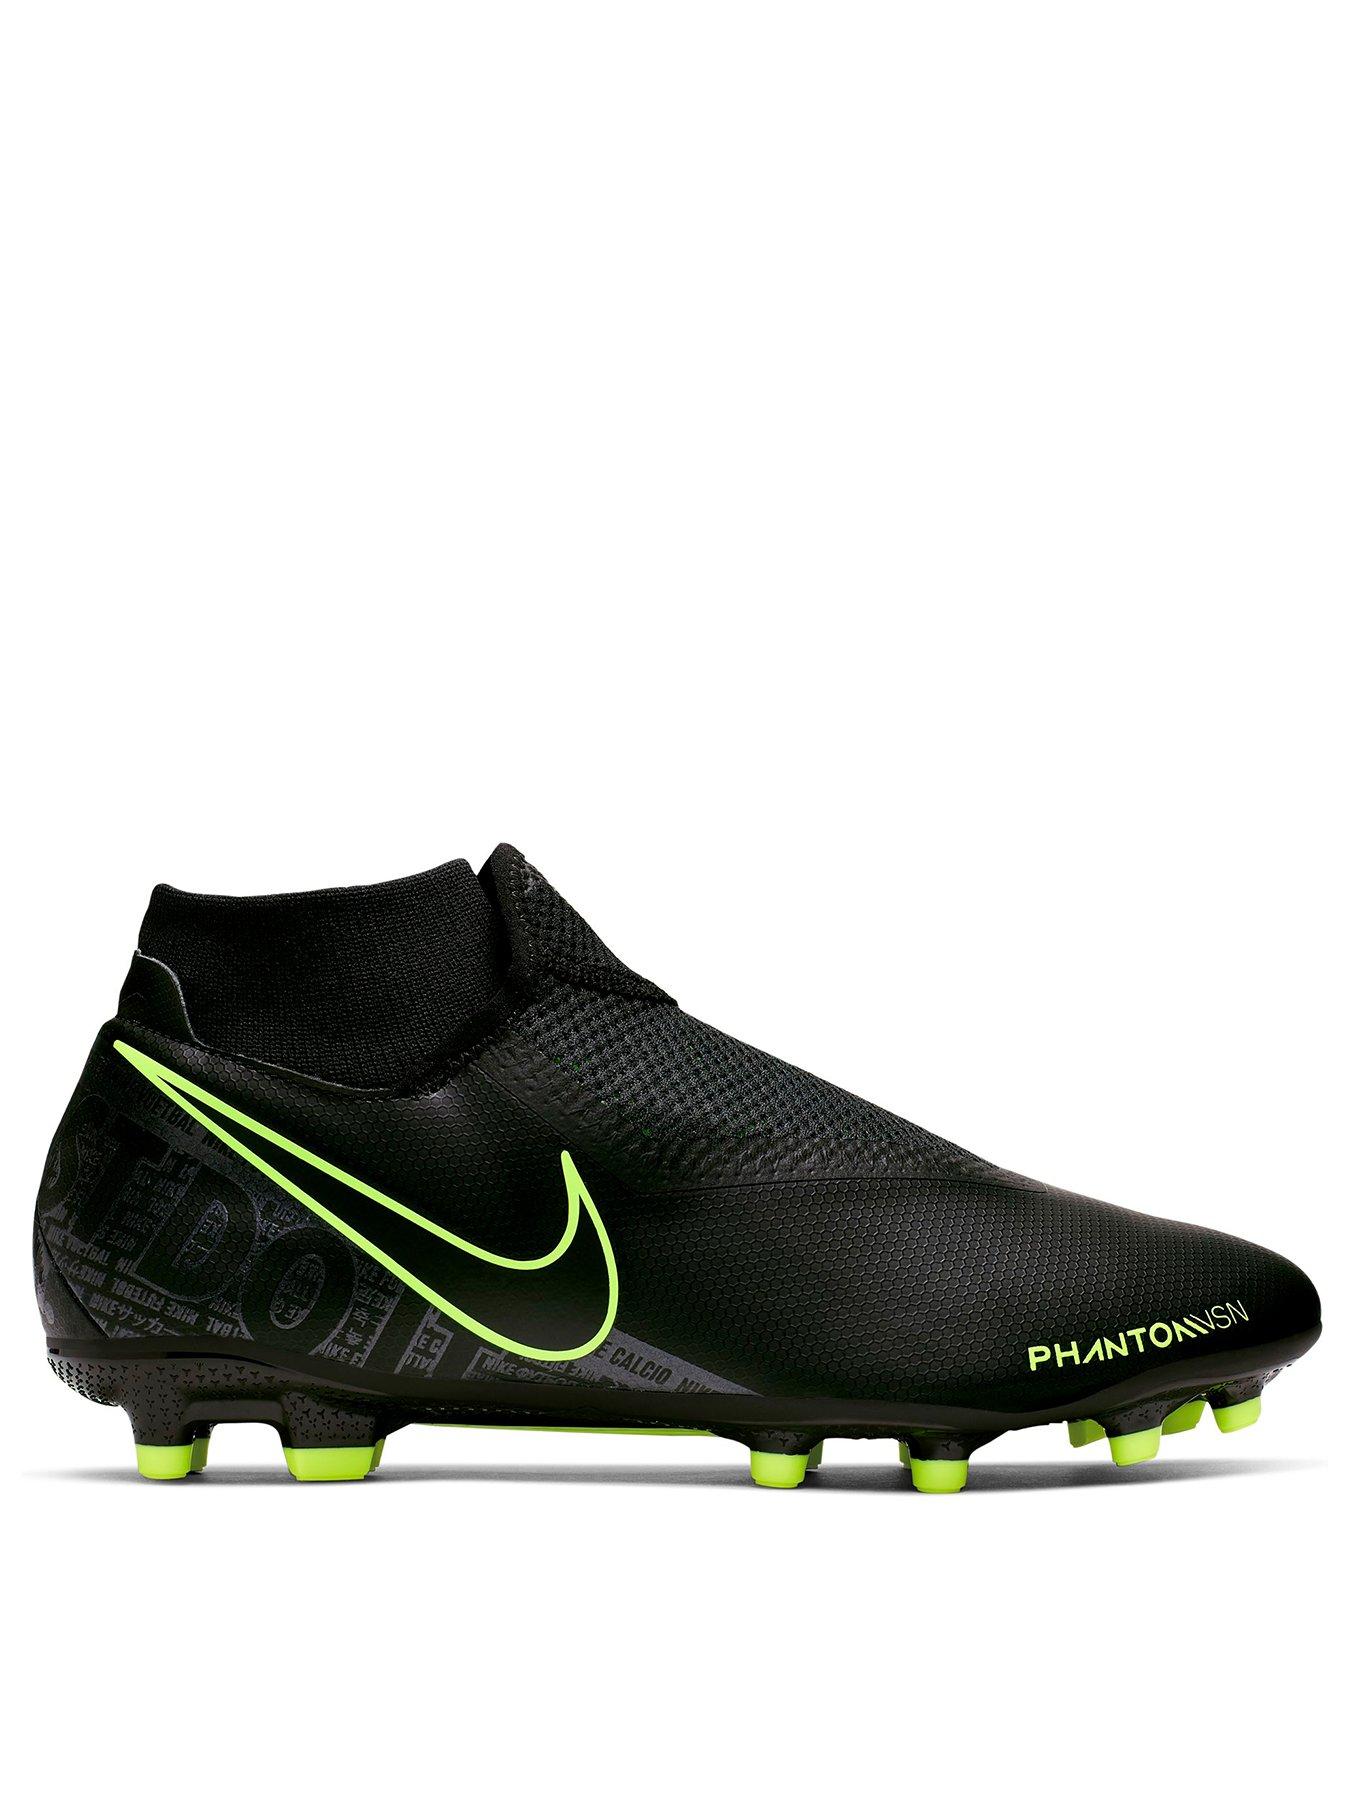 Nike Hypervenom Phantom III DF FG Black Green nike shoes